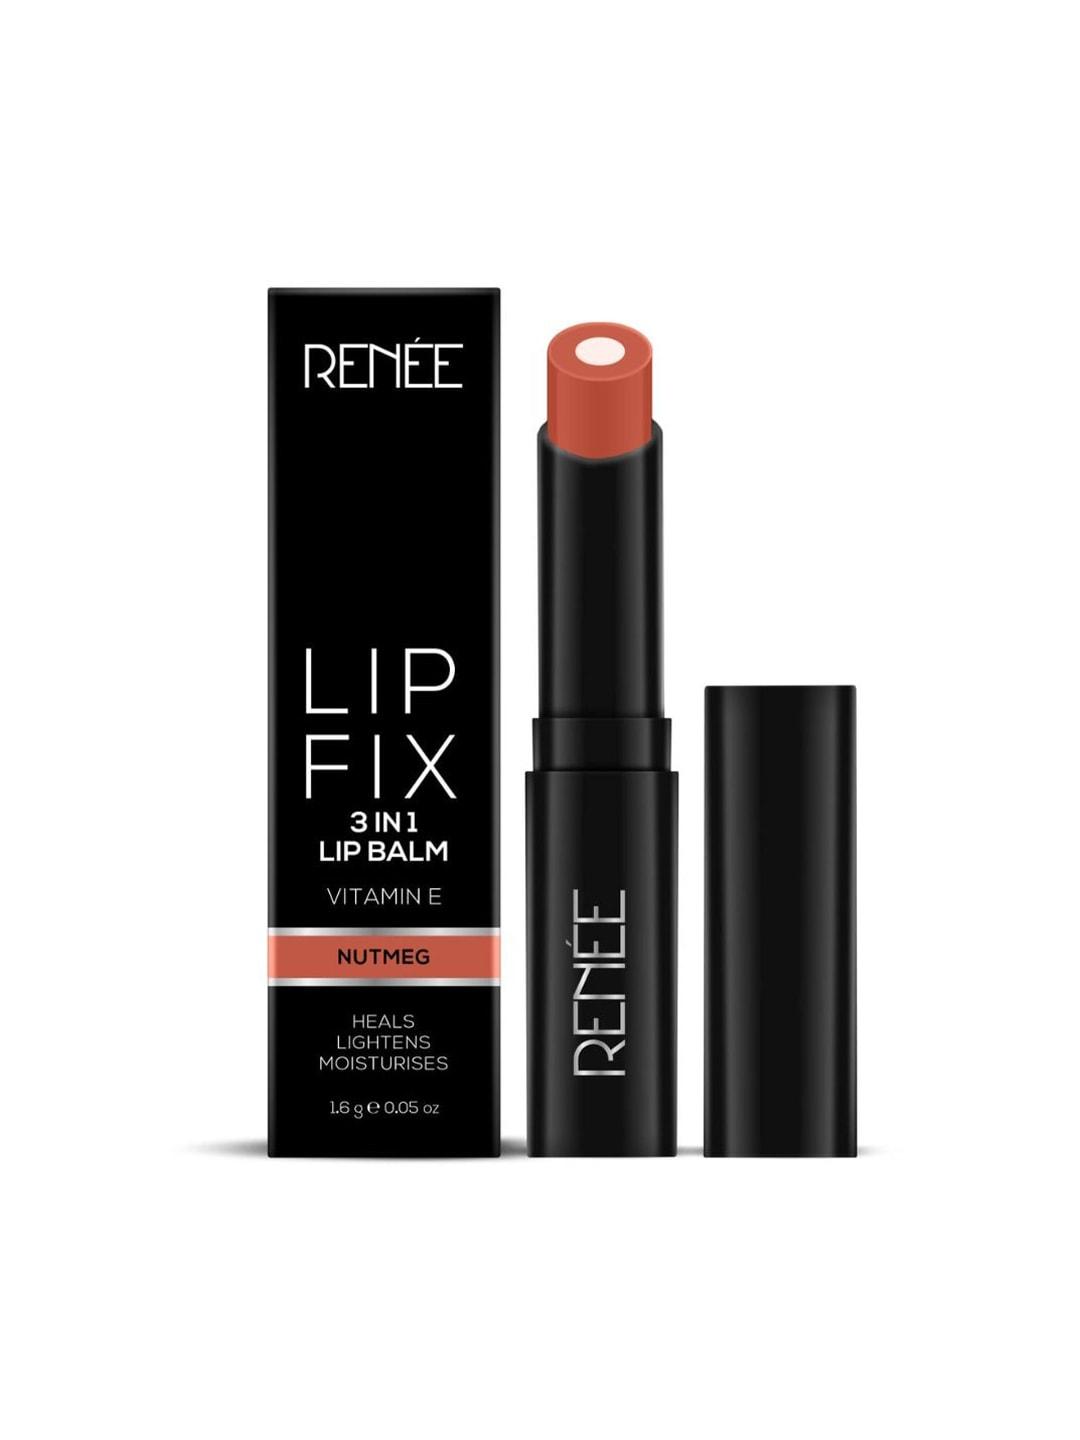 Renee Lip Fix 3-in-1 Lip Balm with Vitamin E - Nutmeg 02